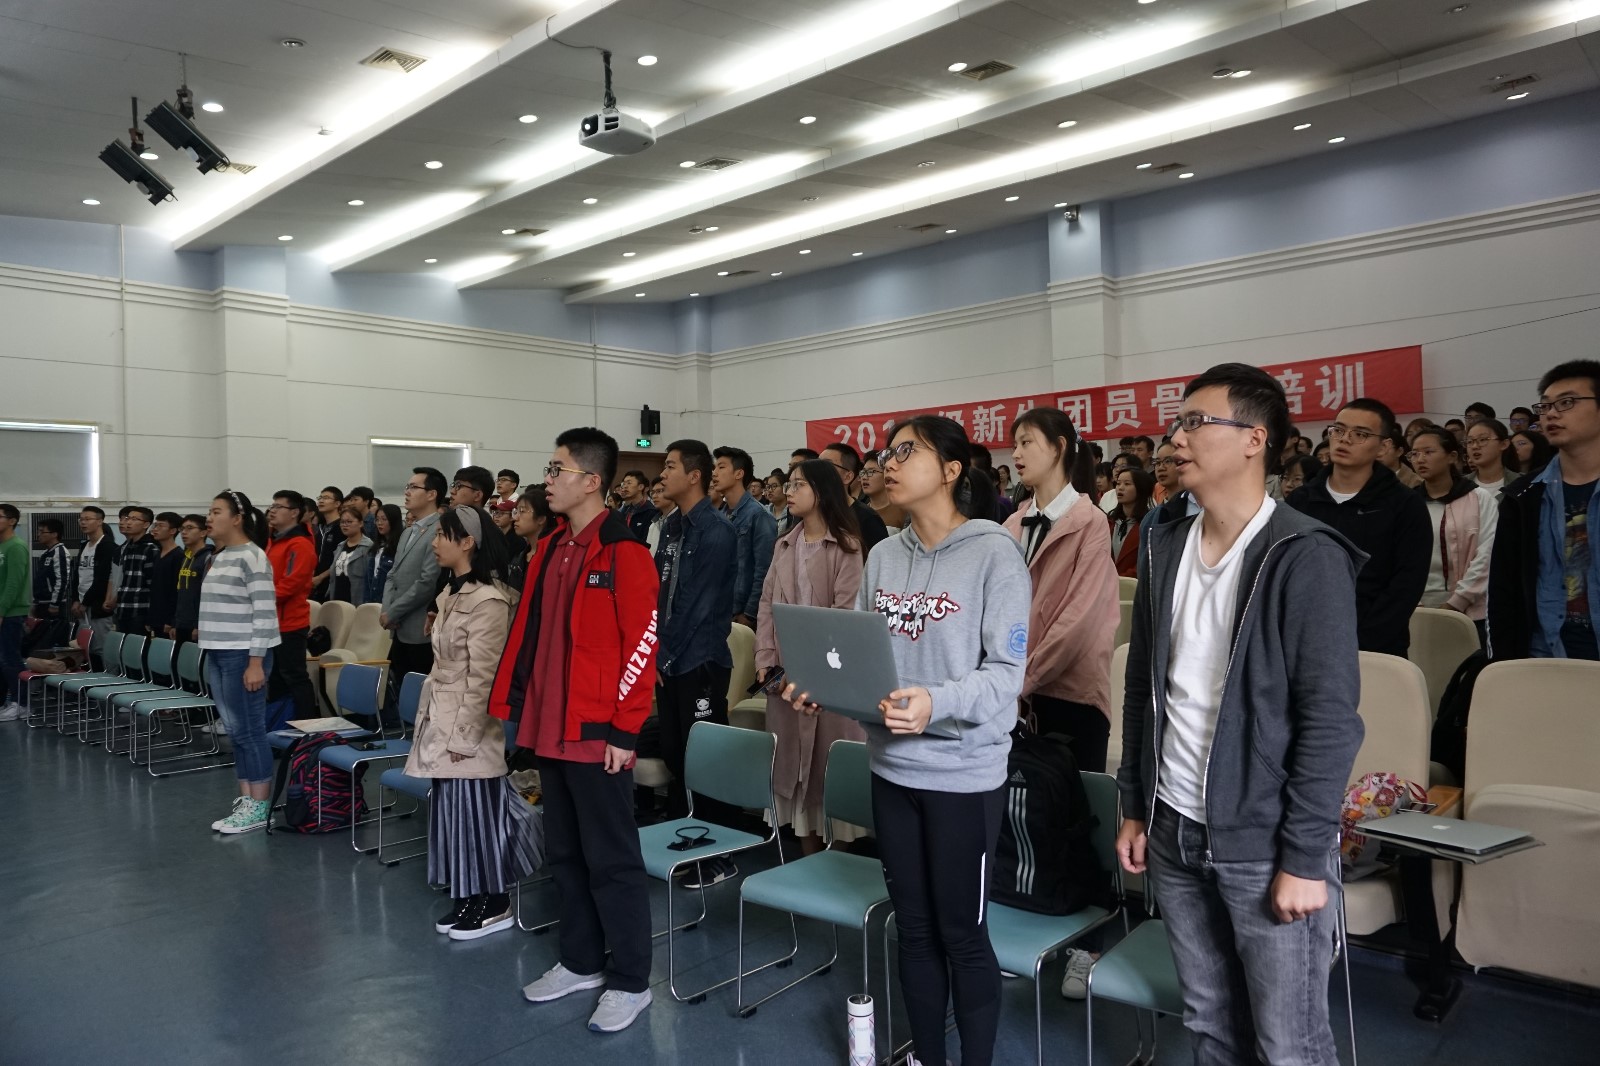 活动在全场高唱中国共产主义青年团团歌中拉开了序幕